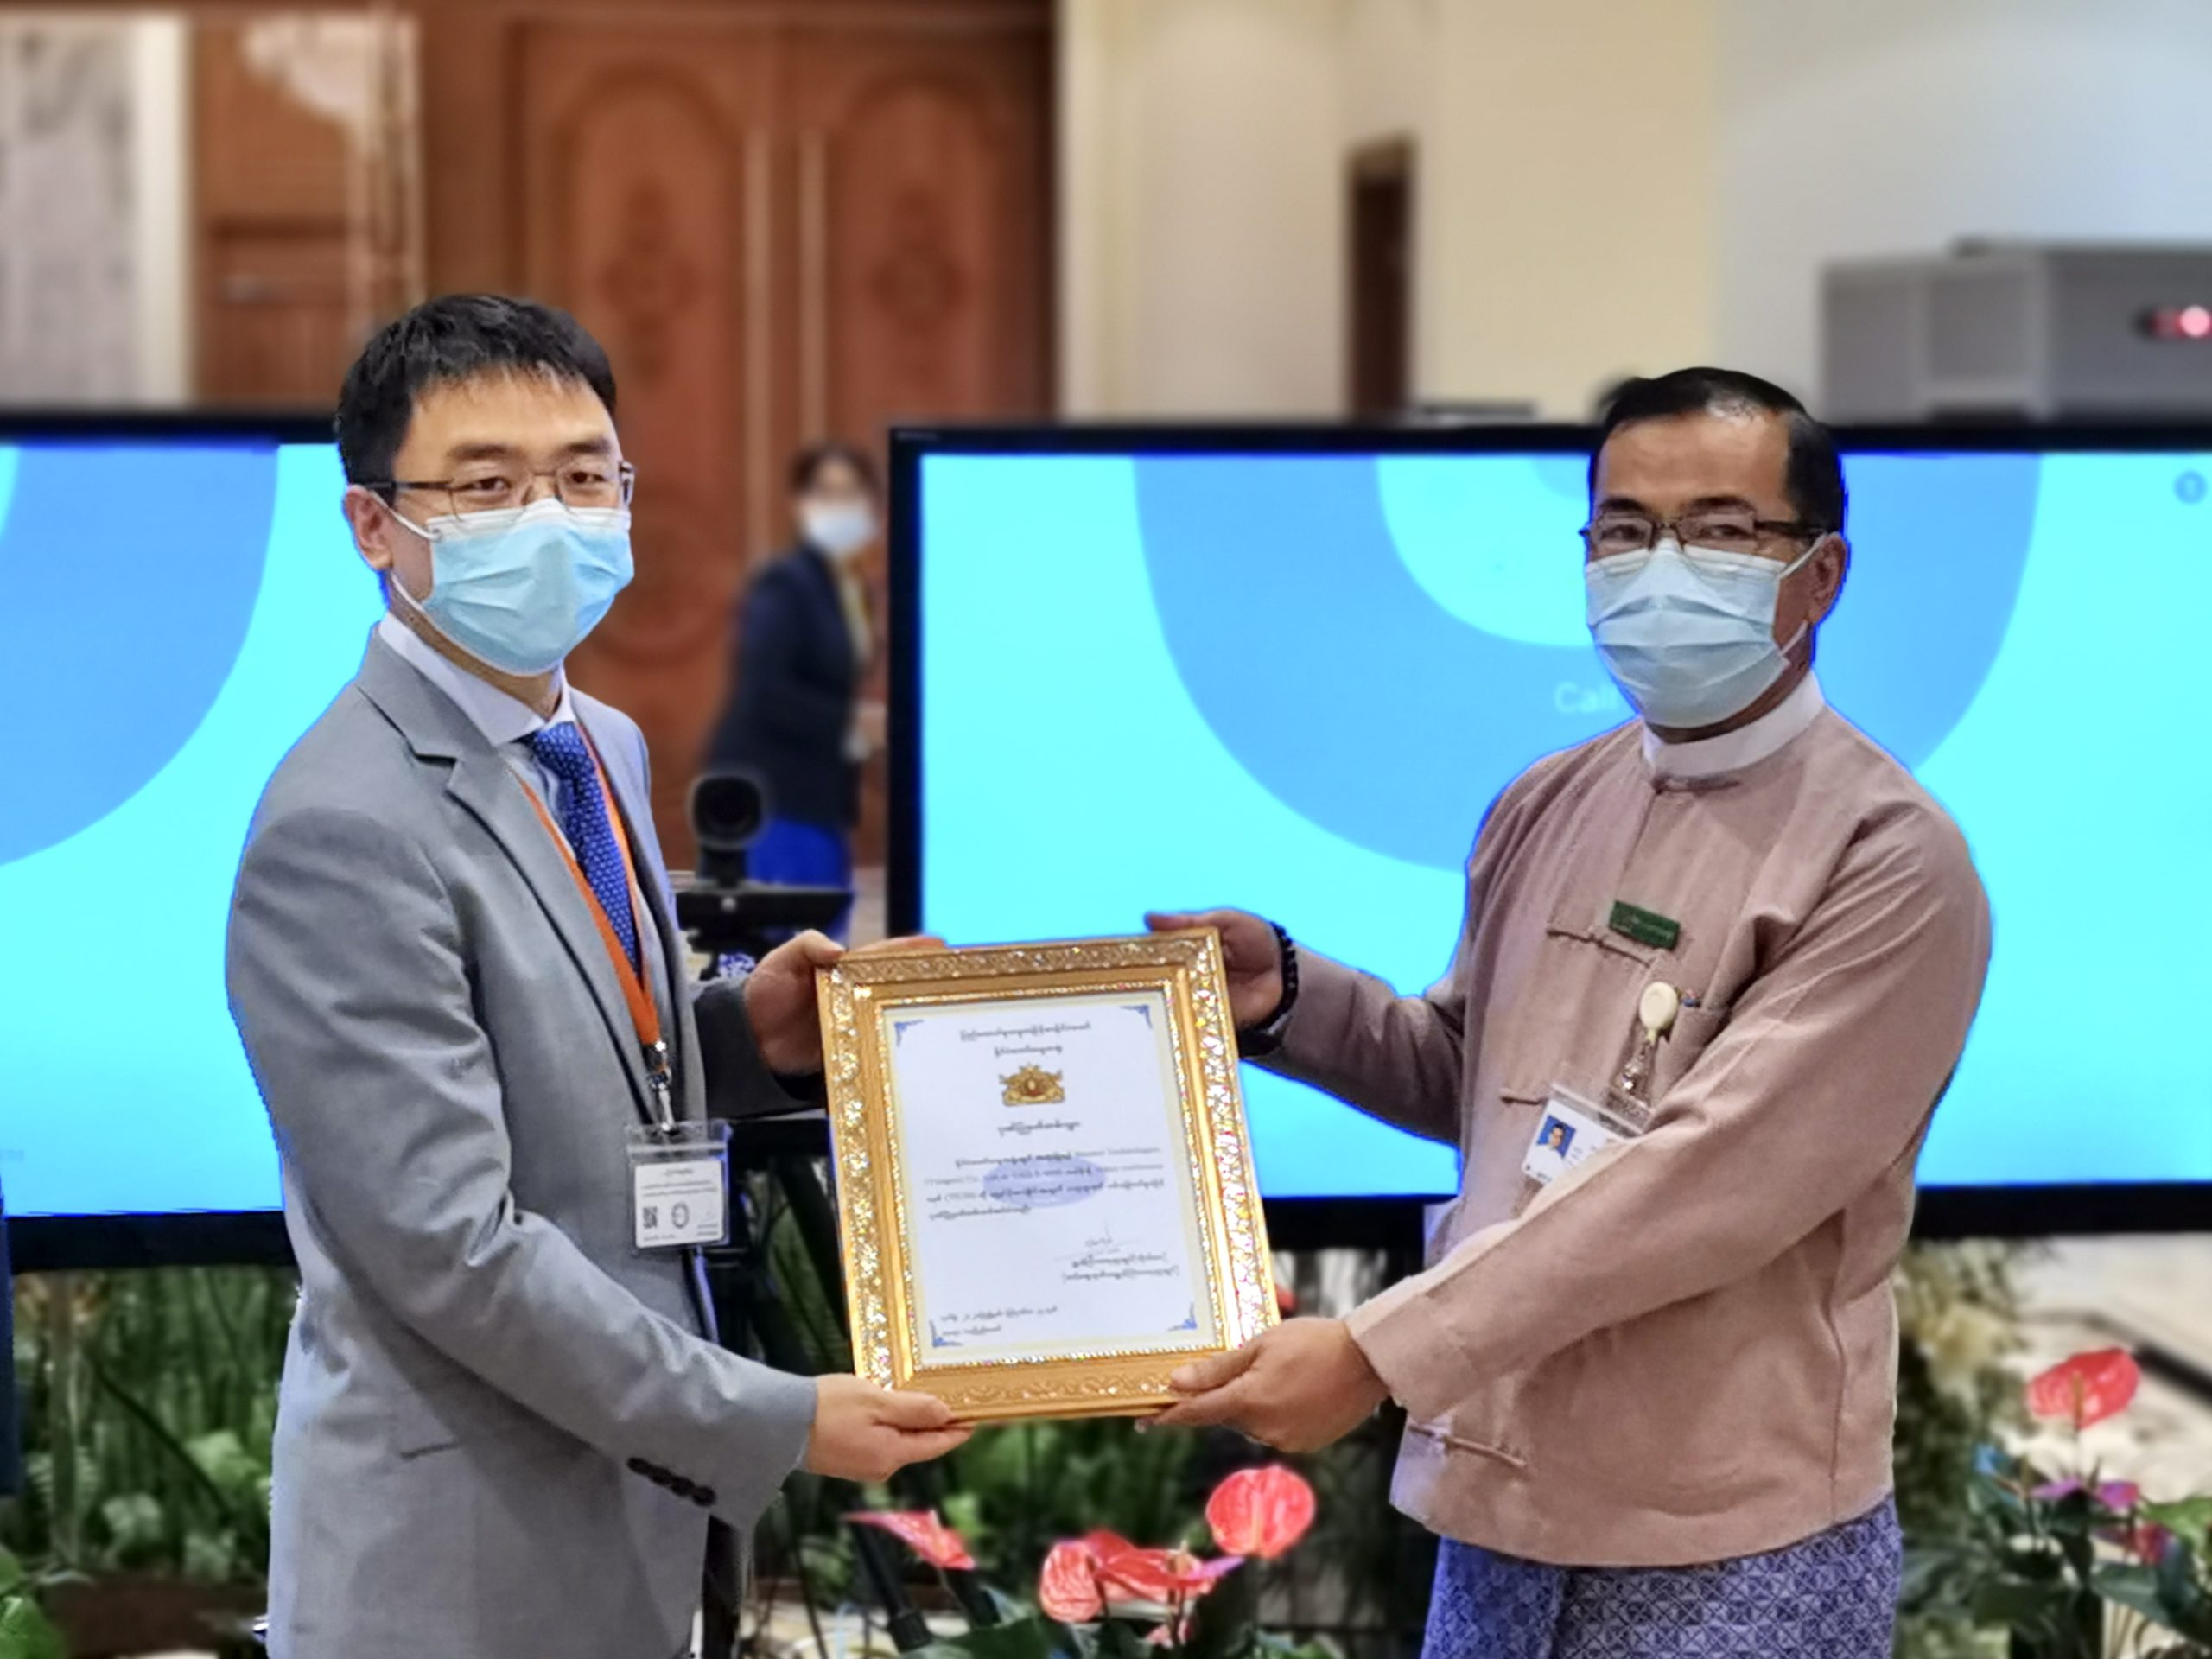 မြန်မာနိုင်ငံတော် သမ္မတရုံးနှင့် နိုင်ငံခြားရေးဝန်ကြီးဌာနတို့က Huawei Myanmar အတွက် ဂုဏ်ပြုမှတ်တမ်းလွှာများ ပေးအပ်ချီးမြှင့်စဉ် (ဓာတ်ပုံ-Huawei Myanmar)